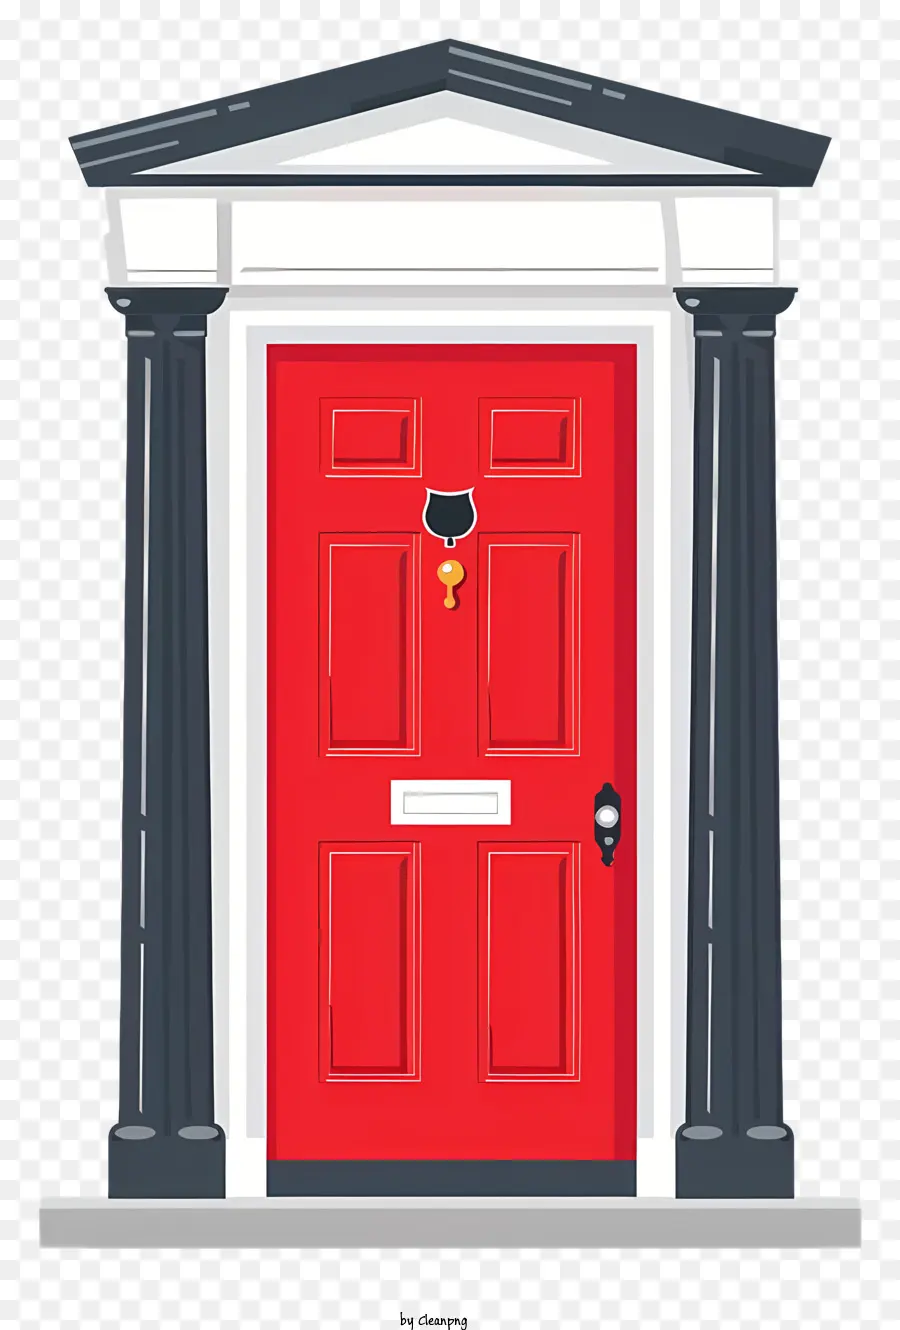 cửa màu đỏ cửa trước gỗ cửa đá cột đá gắn liền với cửa - Cửa trước màu đỏ với trụ cột, chìa khóa, gõ cửa